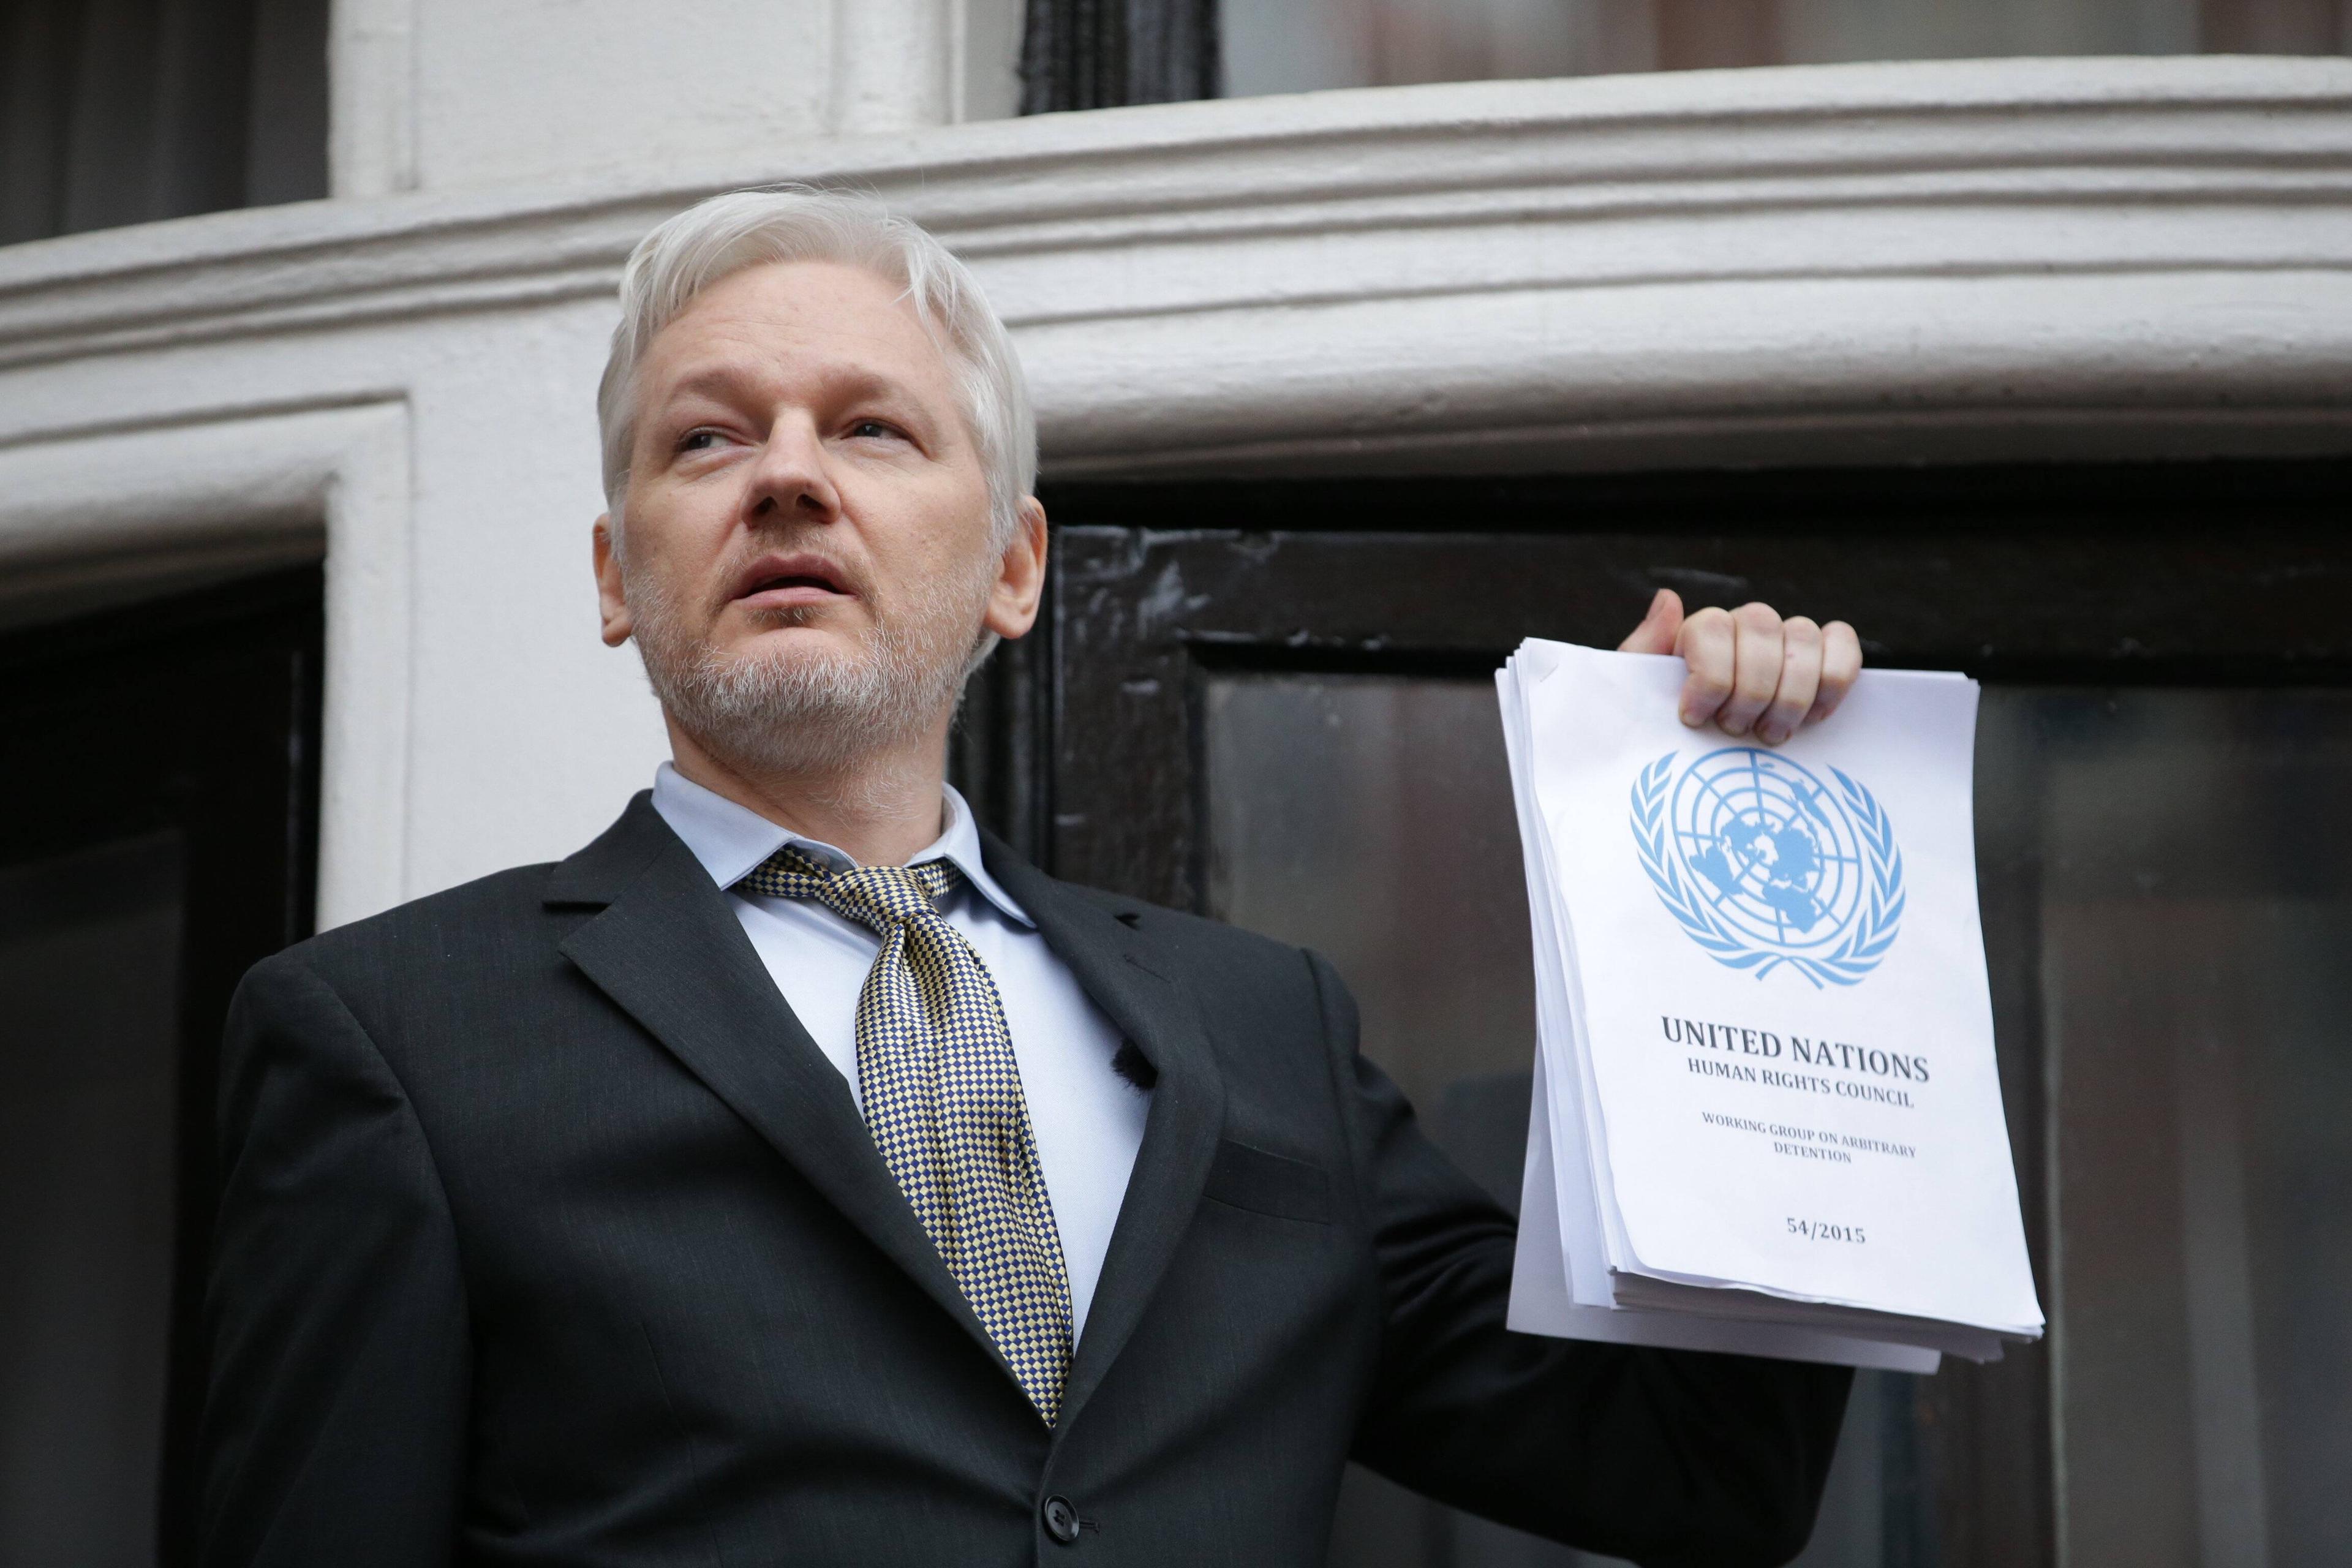 Julian Assange, spricht vor der ecuadorianischen Botschaft, nachdem die UN-Arbeitsgruppe gegen willkürliche Inhaftierung eine Entscheidung in seinem Fall getroffen hat, 5. Februar 2016.